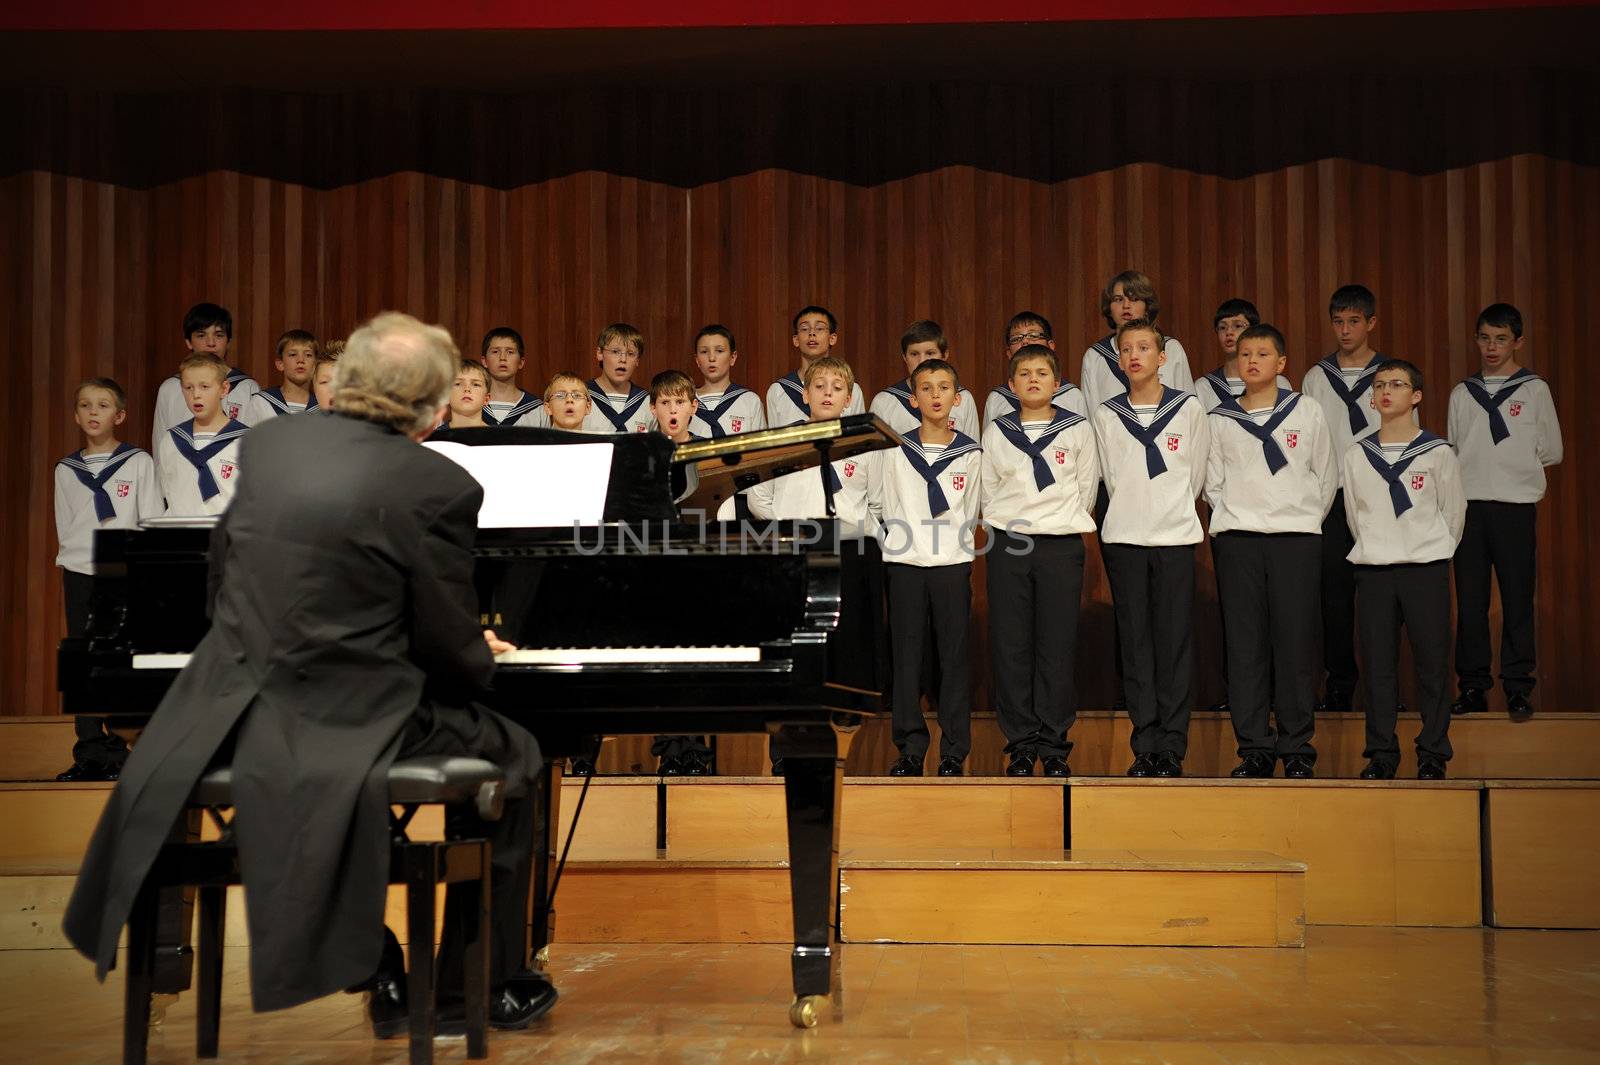 Concert of Austrian St,Florian Boy's Choir by jackq